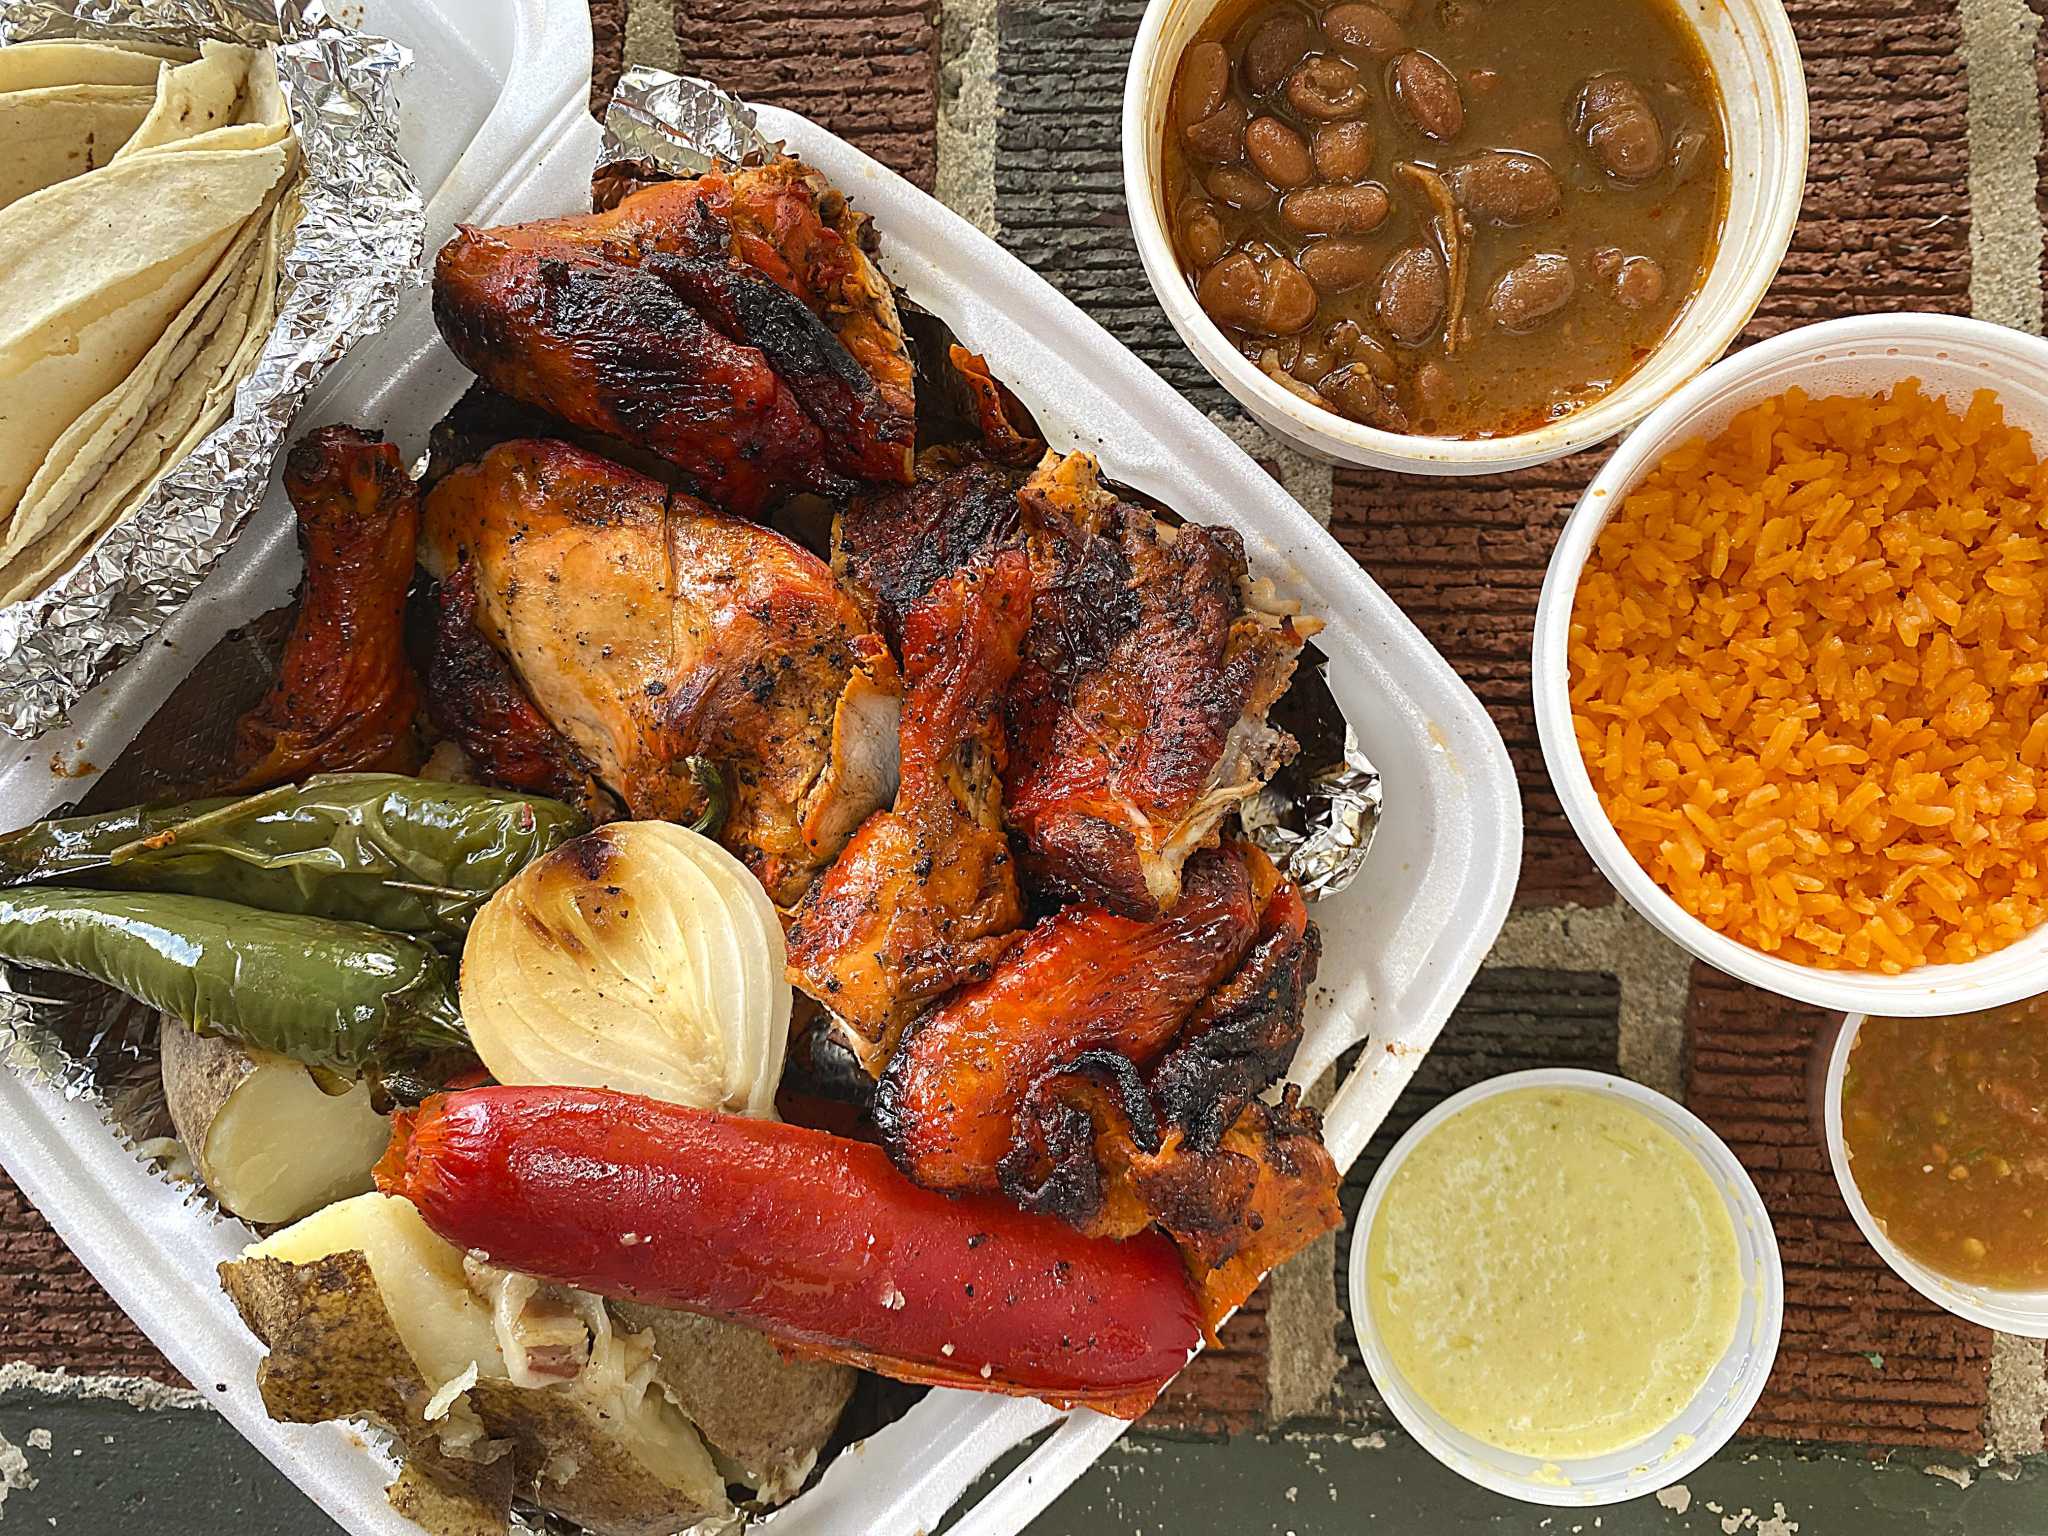 5 San Antonio pollos asados restaurants for great norteño-style Mexican  grilled chicken